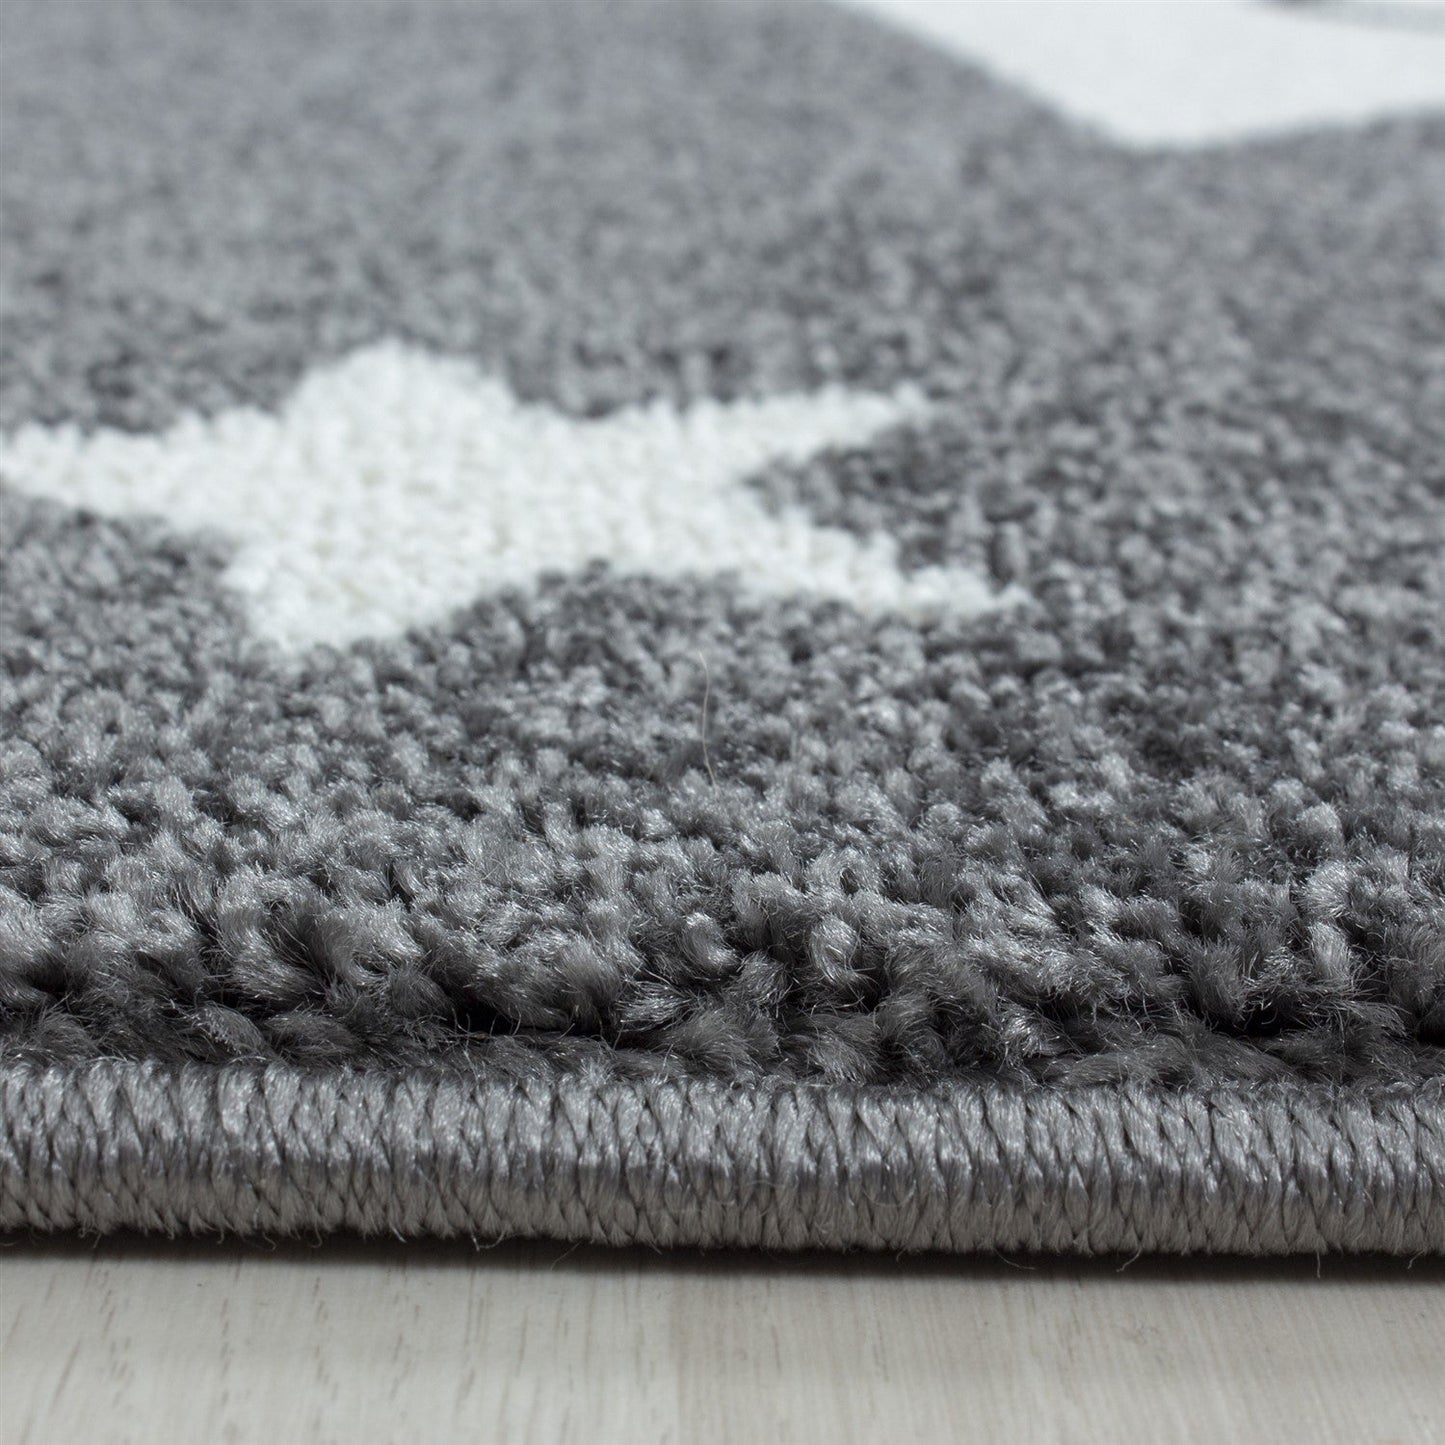 Kinderteppich Kinderzimmer Teppich Sterne Muster Grau - Weiß